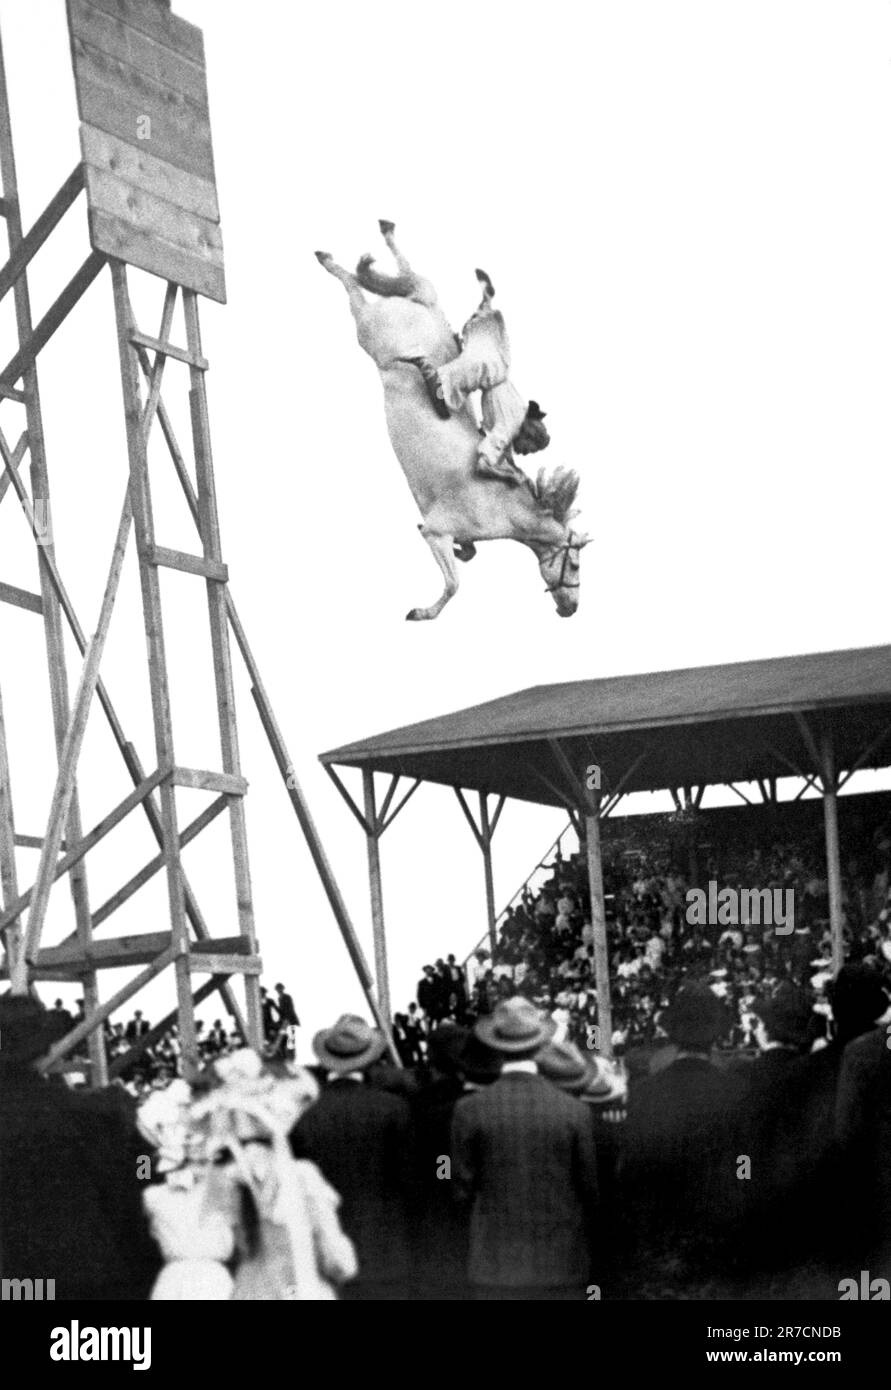 Pueblo, Colorado: 4. Juli 1905. Eunice Padfield und ihr Pferd begeistern die Urlaubsfreunde, wenn sie von einer hohen Plattform in einen Pool mit Wasser darunter springen. Stockfoto